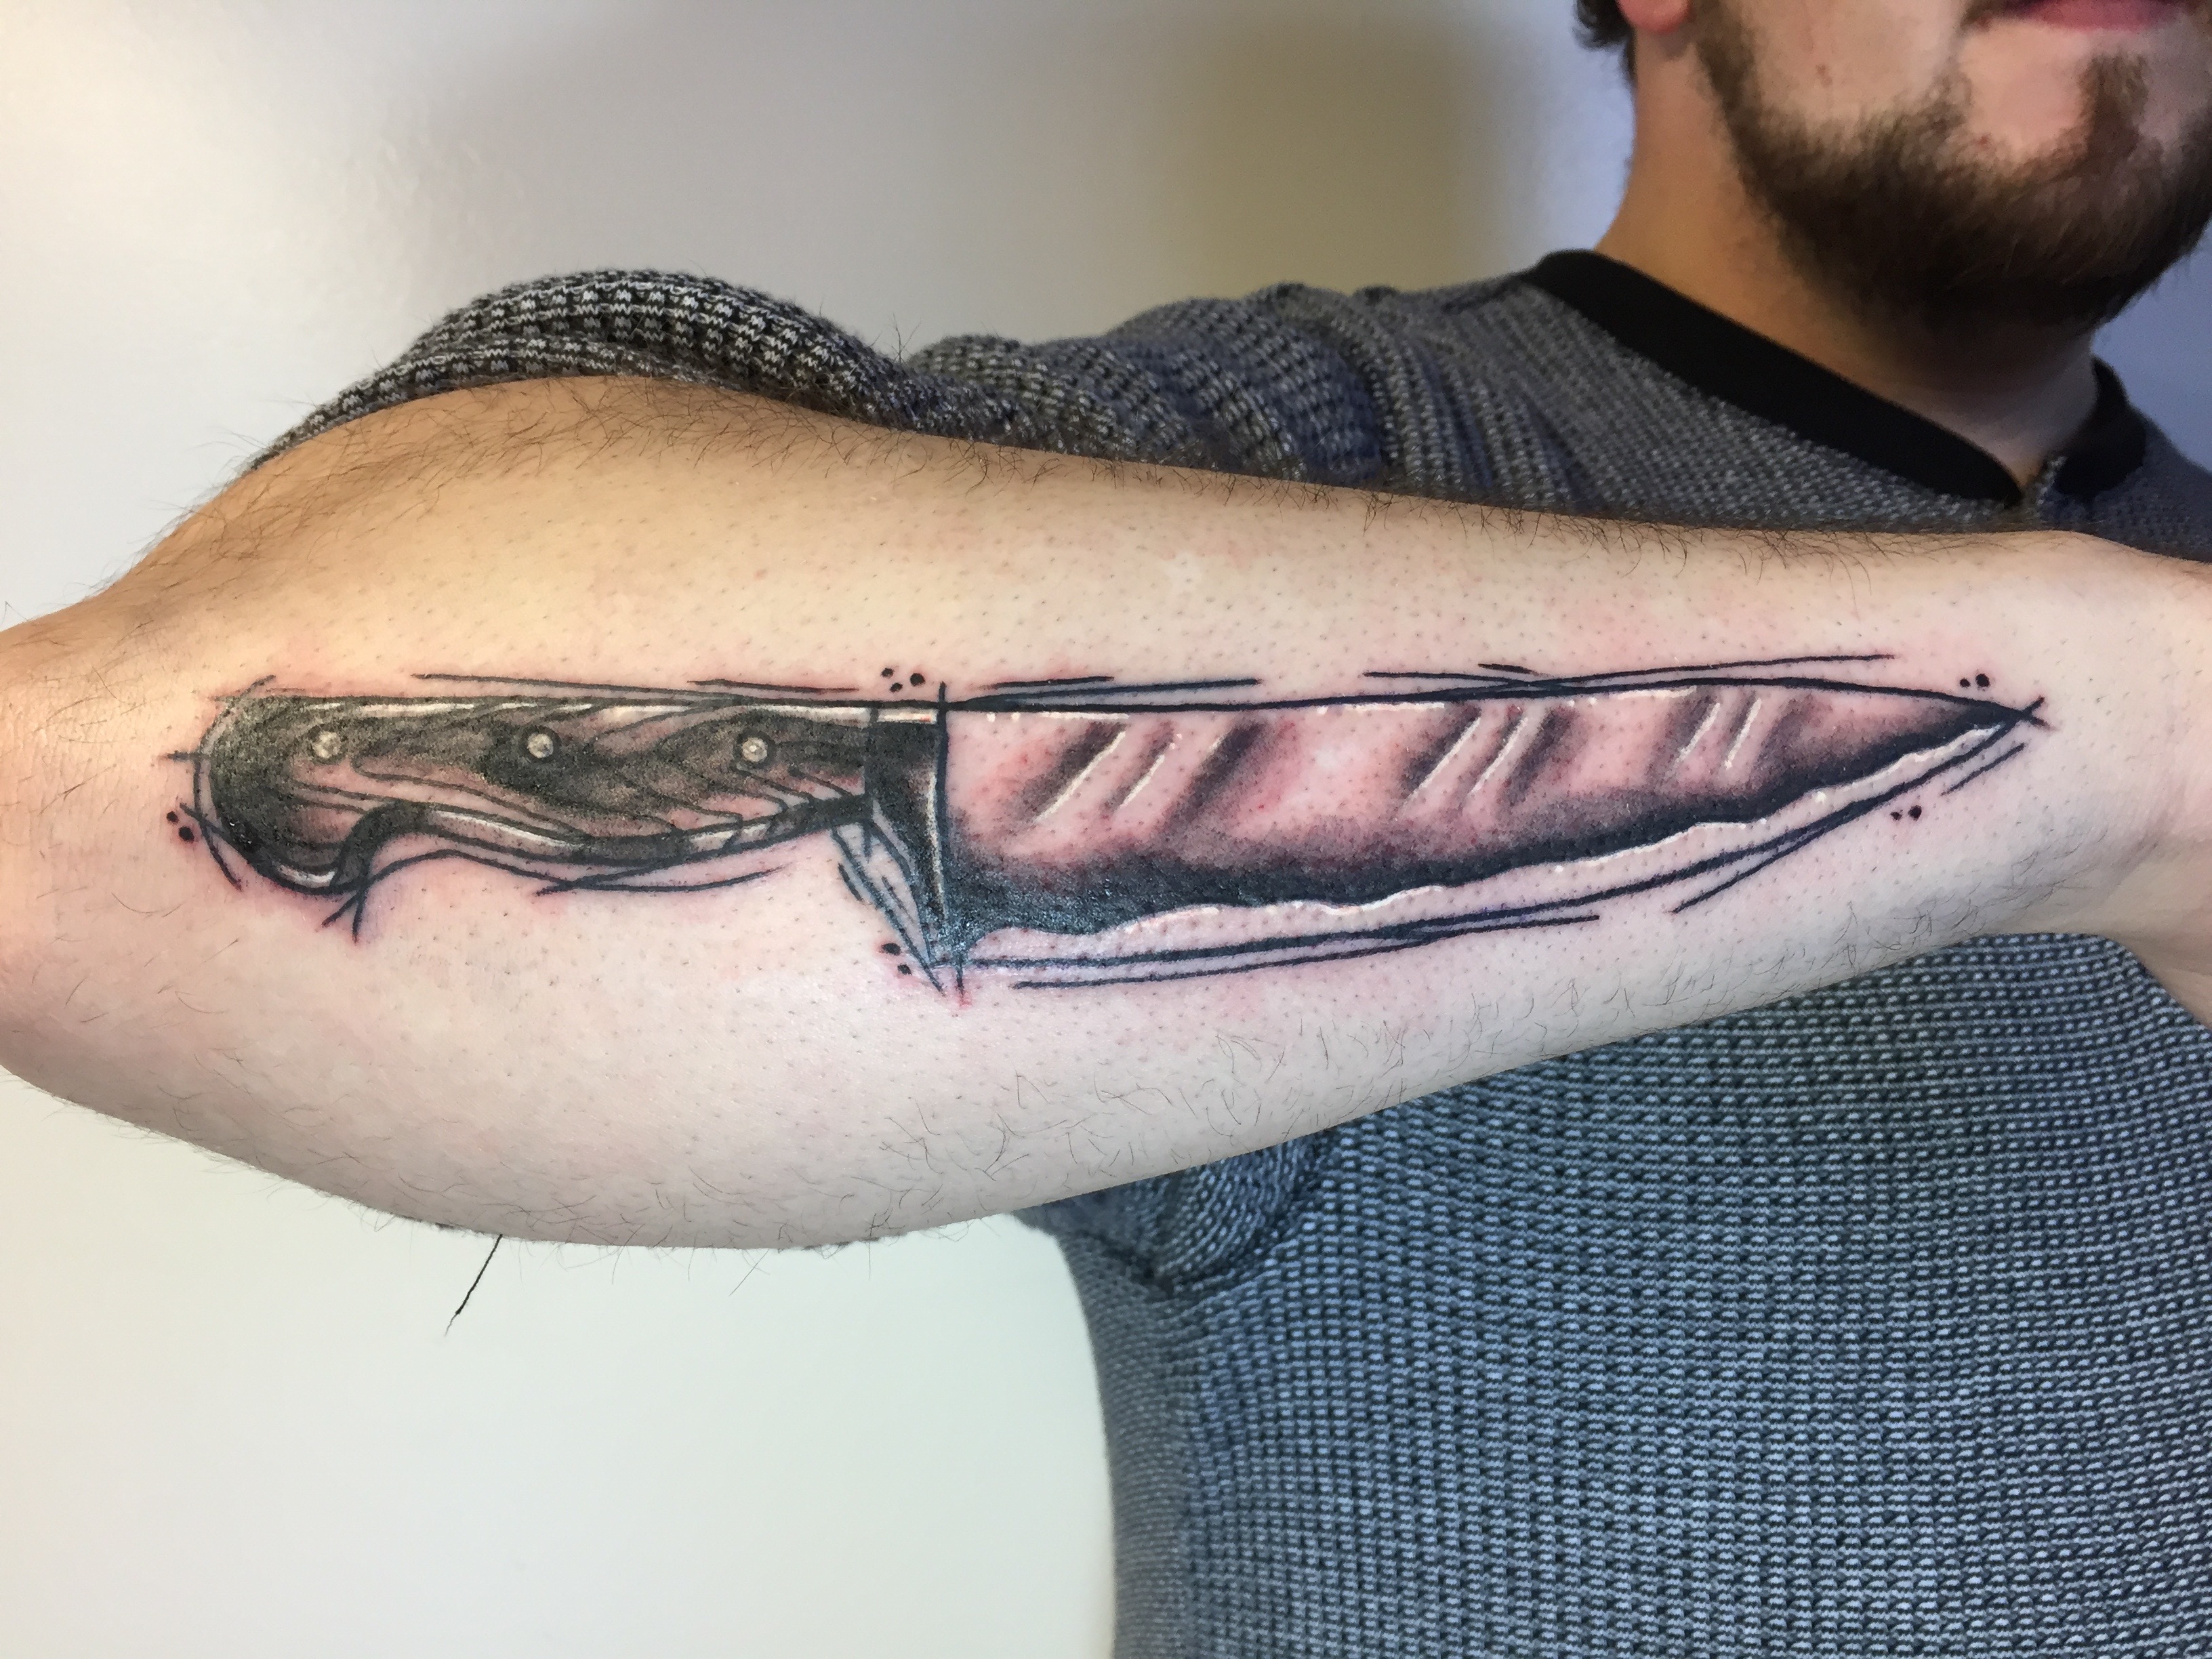 Teemu knife tattoo